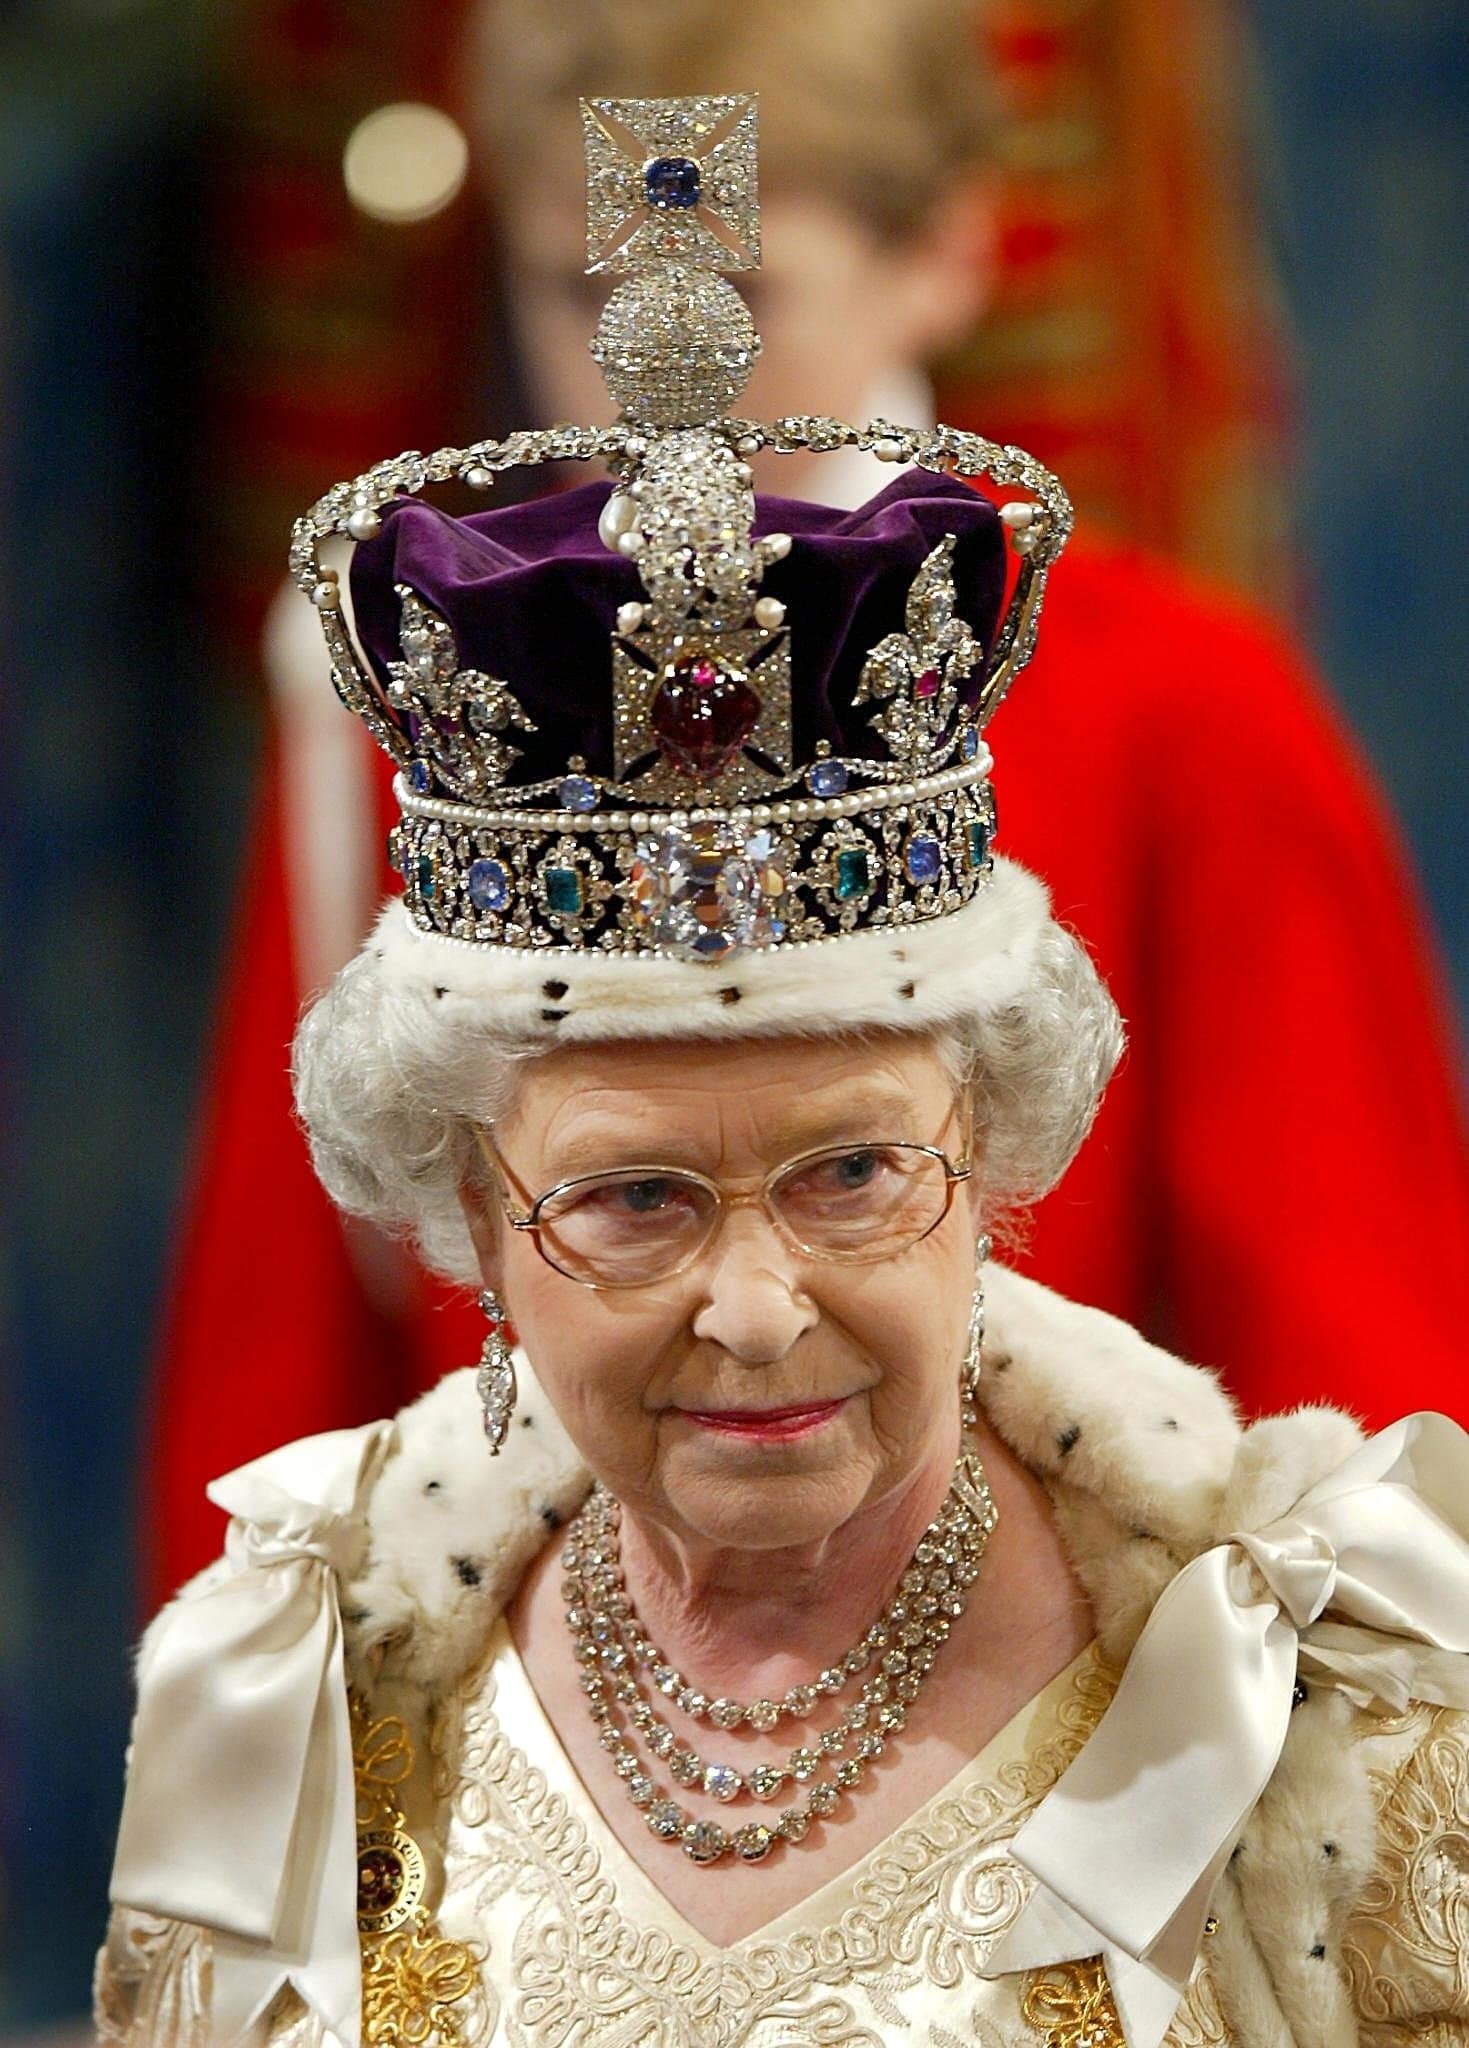 Krvava istorija i megalomanija: Zašto je dijamant sa krune ponovo aktuelan u Indiji nakon smrti kraljice Elizabete Druge? 4